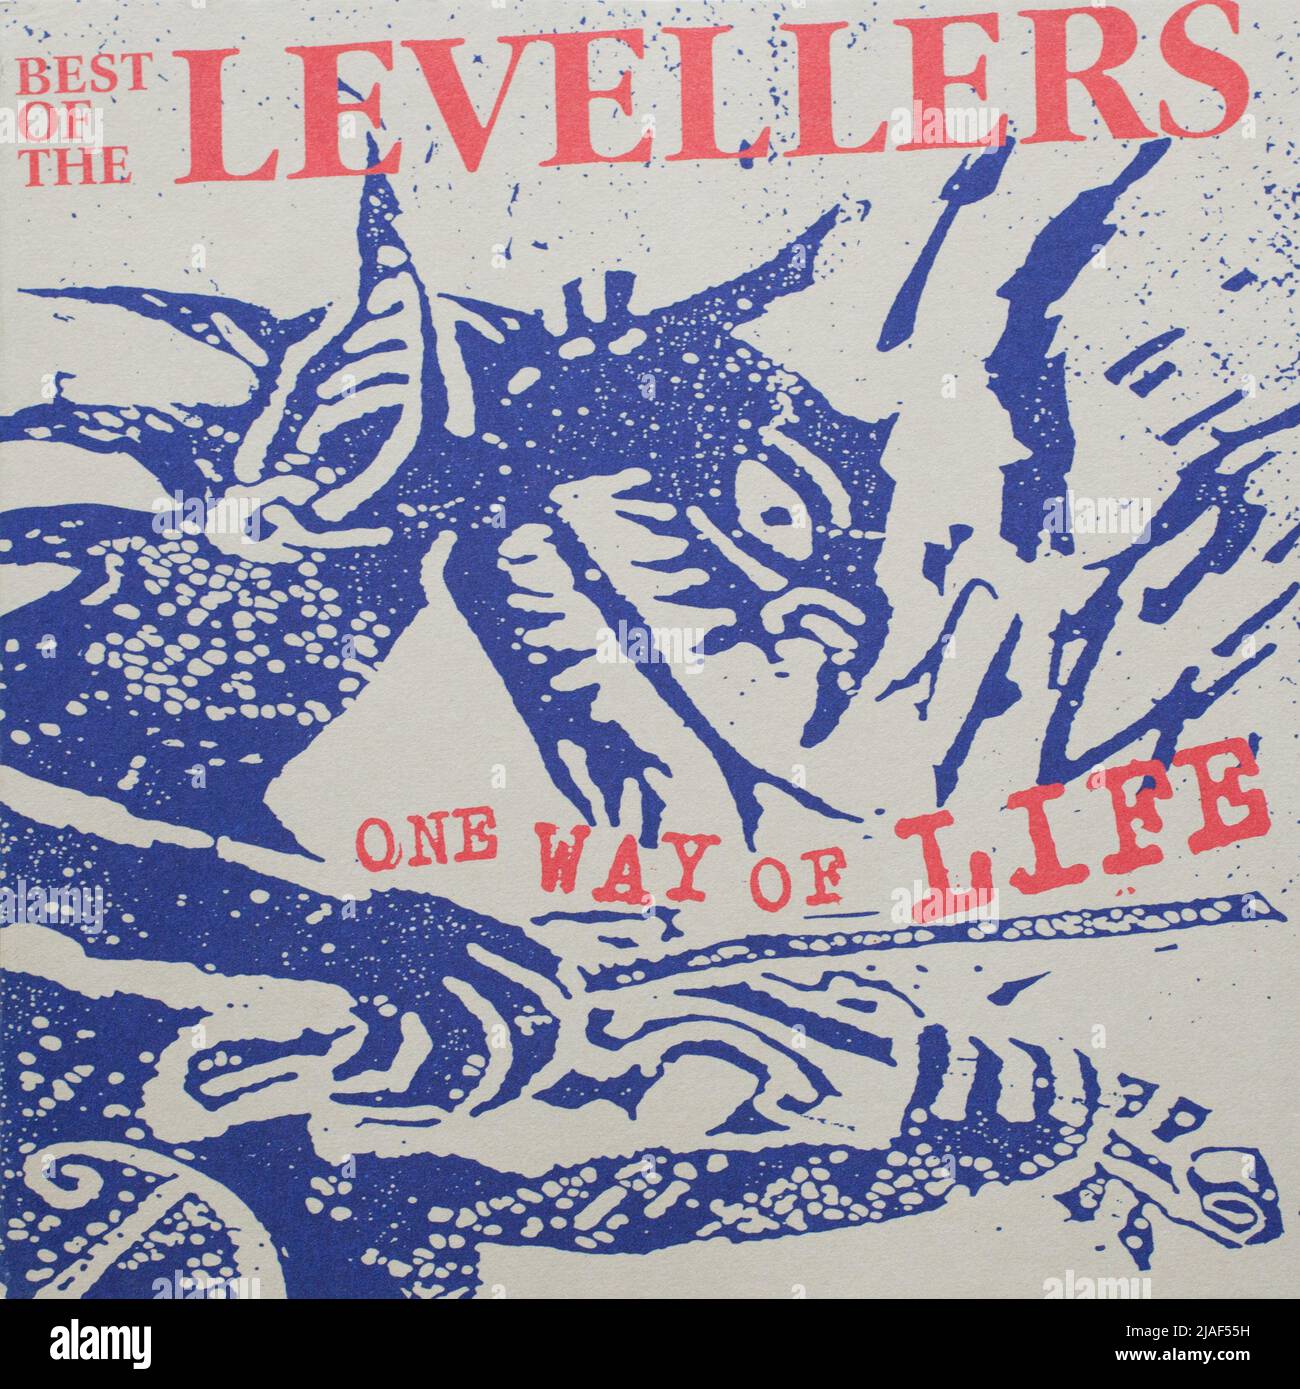 El álbum de cd Cover To, Best of the Levelers, One Way of Life Foto de stock